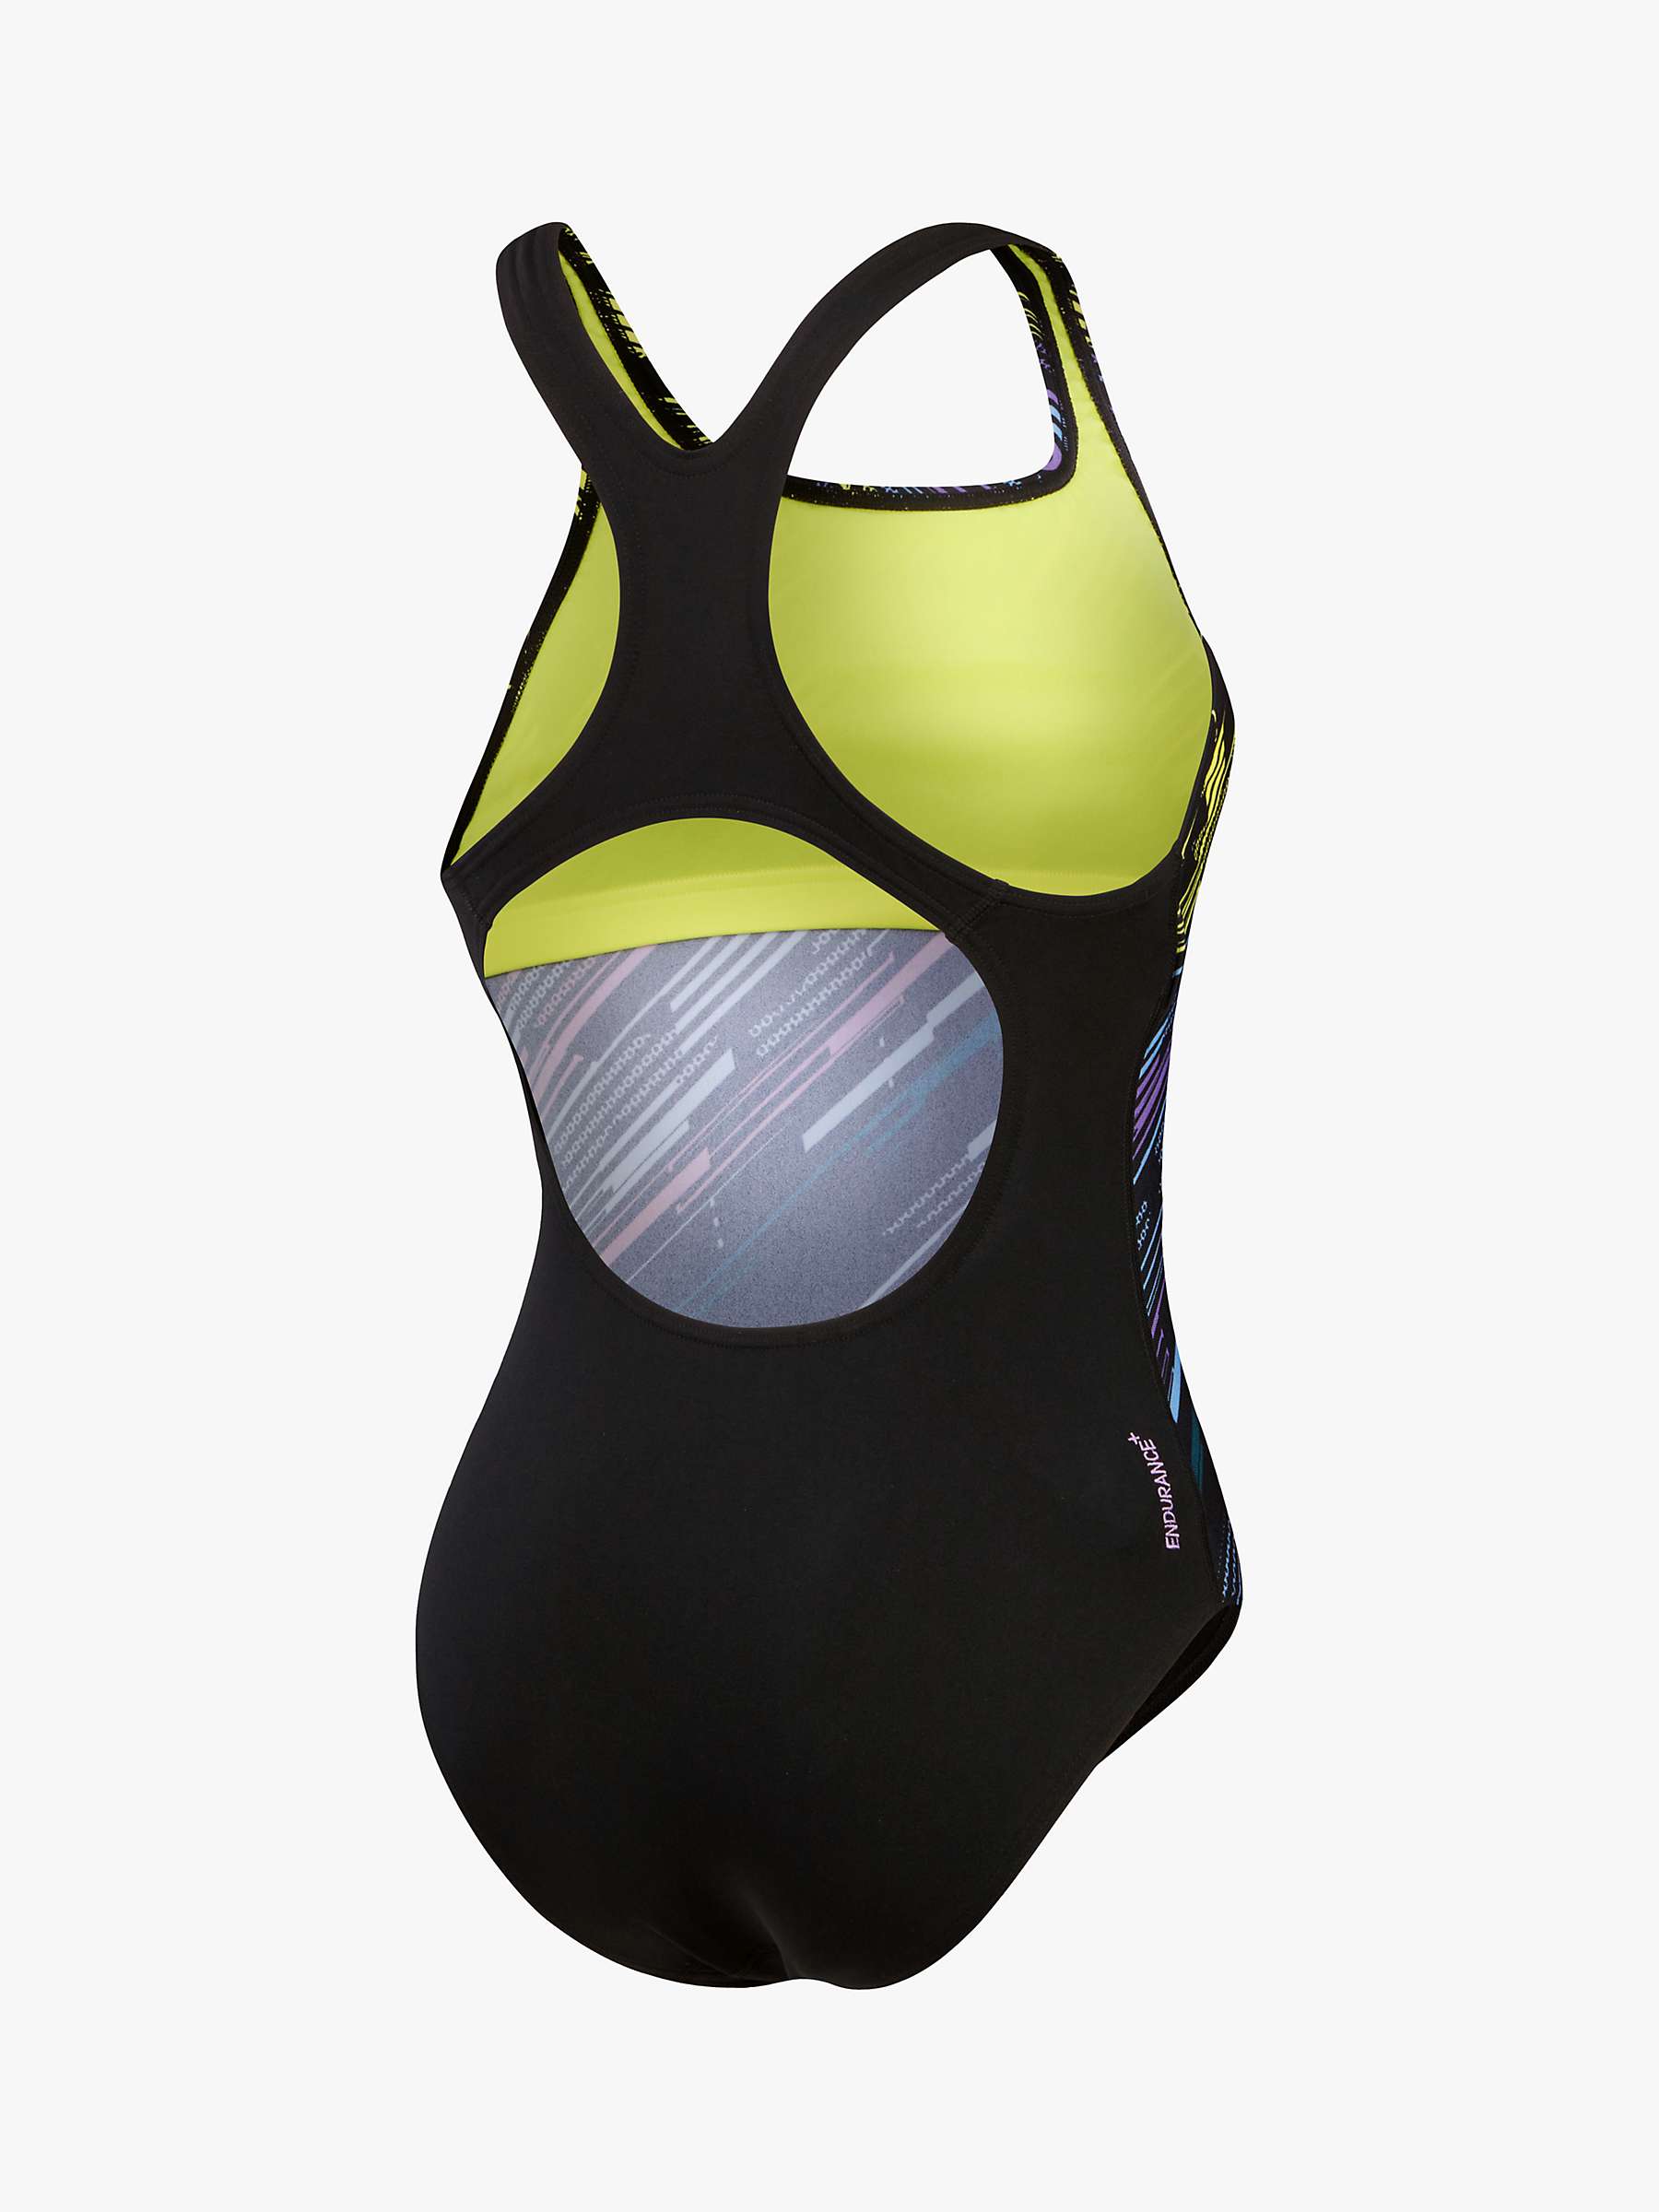 Buy Speedo Printed Medalist Recycled Swimsuit, Black Online at johnlewis.com